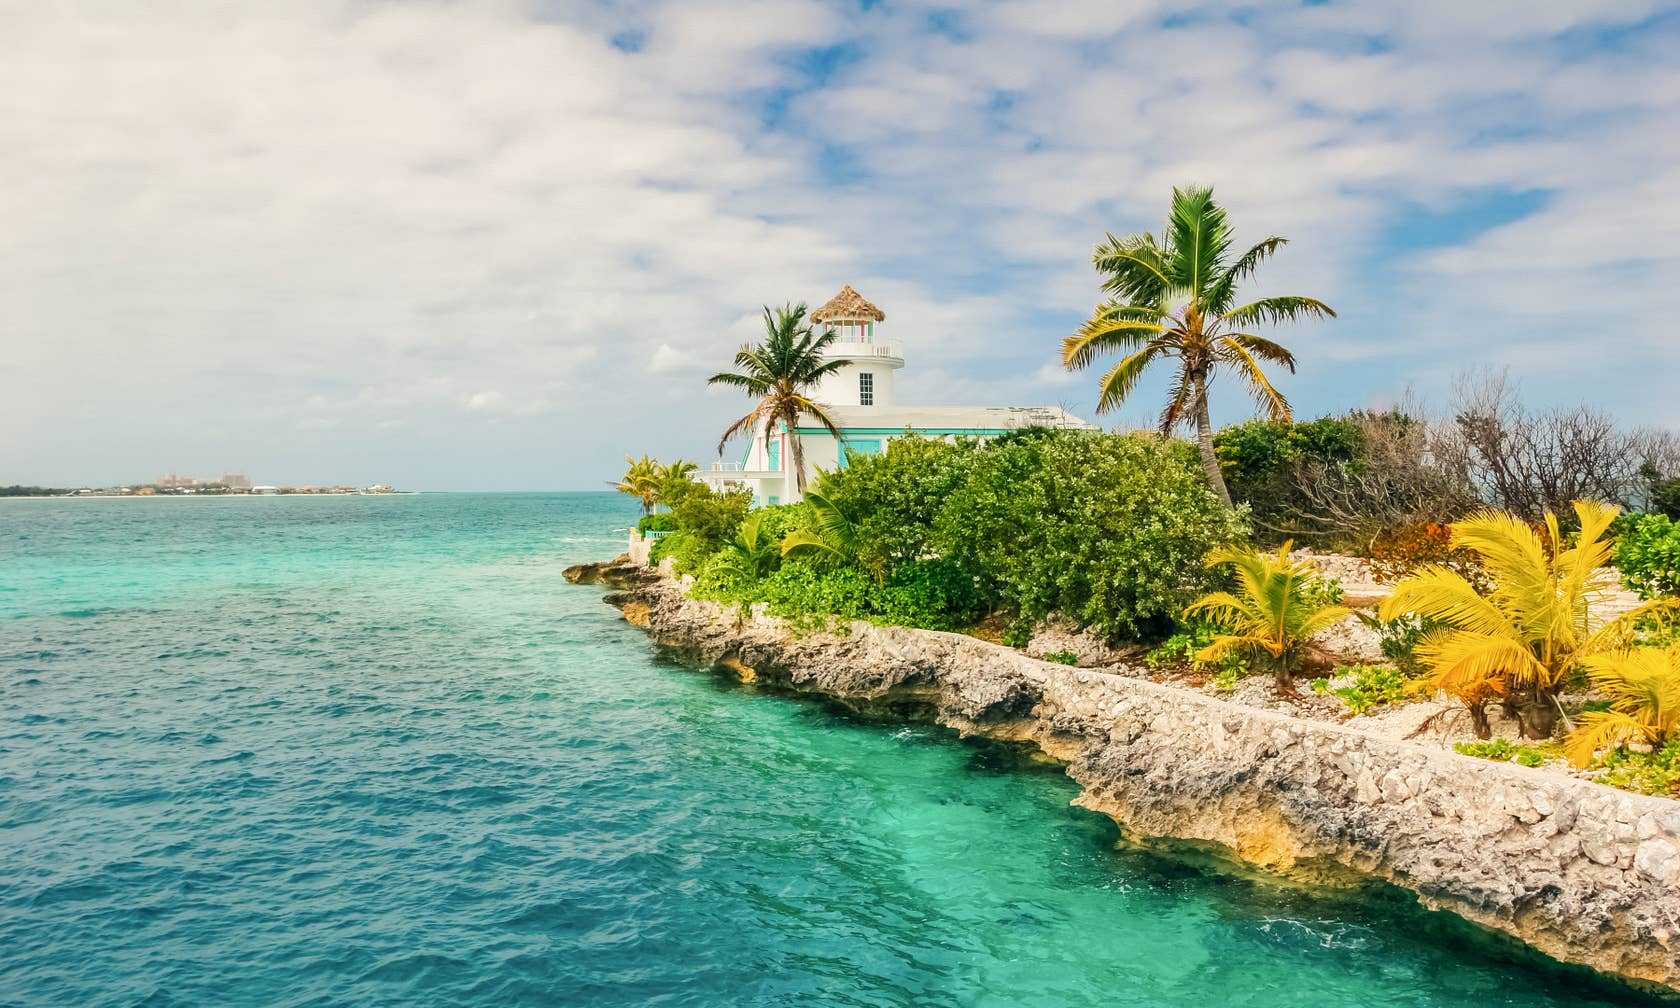 Bérbeadó nyaralók itt: The Bahamas